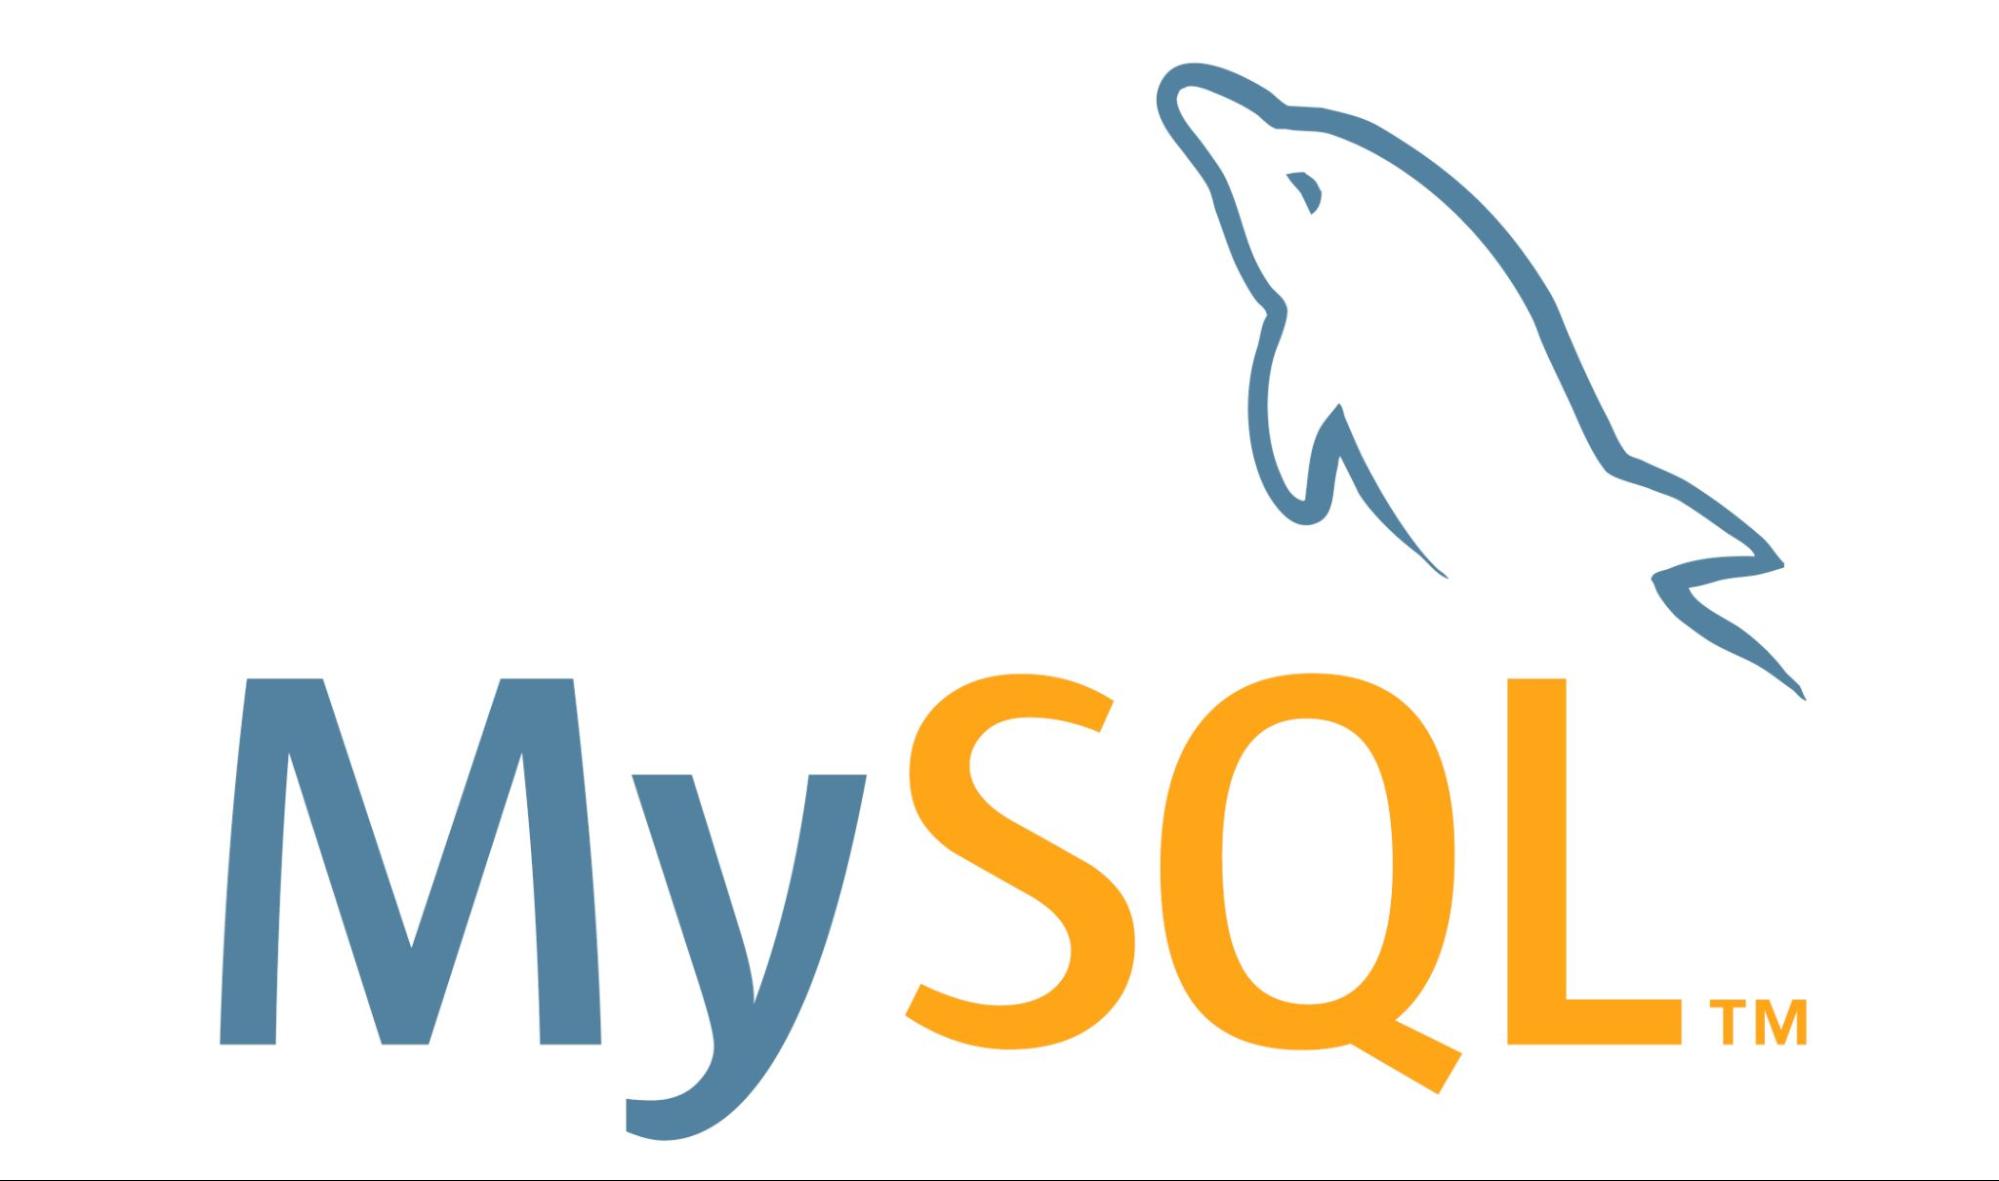 Logomarca do SGBD MySQL. Ela é composta pelas palavras “My” em azul e “SQL” em laranja. Acima da letra L é apresentado traços de um golfinho na cor azul.